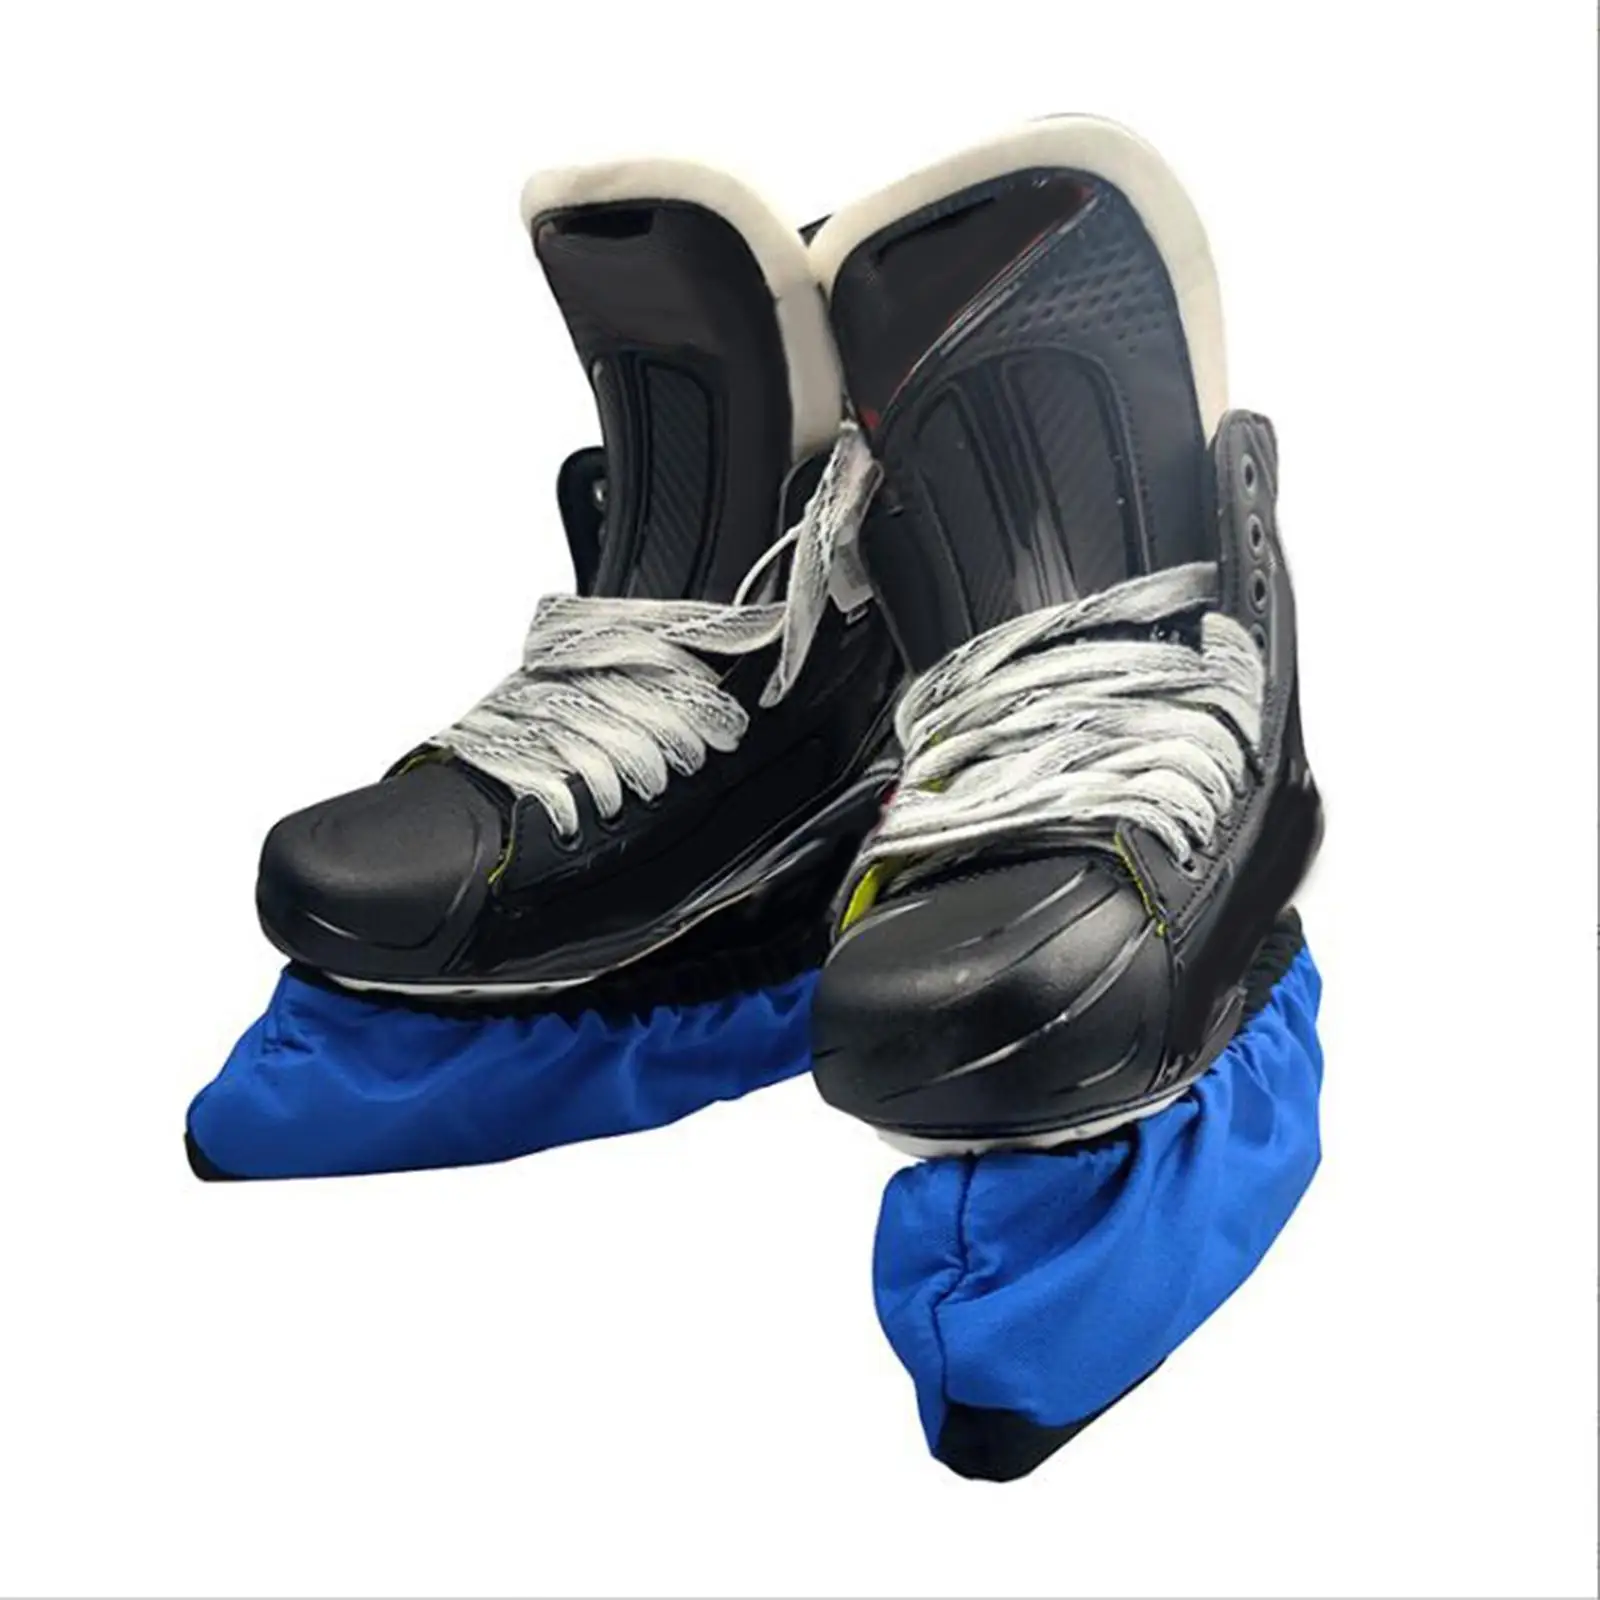 Skating Guard Skating Equipment Hockey Skate Protect Sleeve Protective Soft Ice